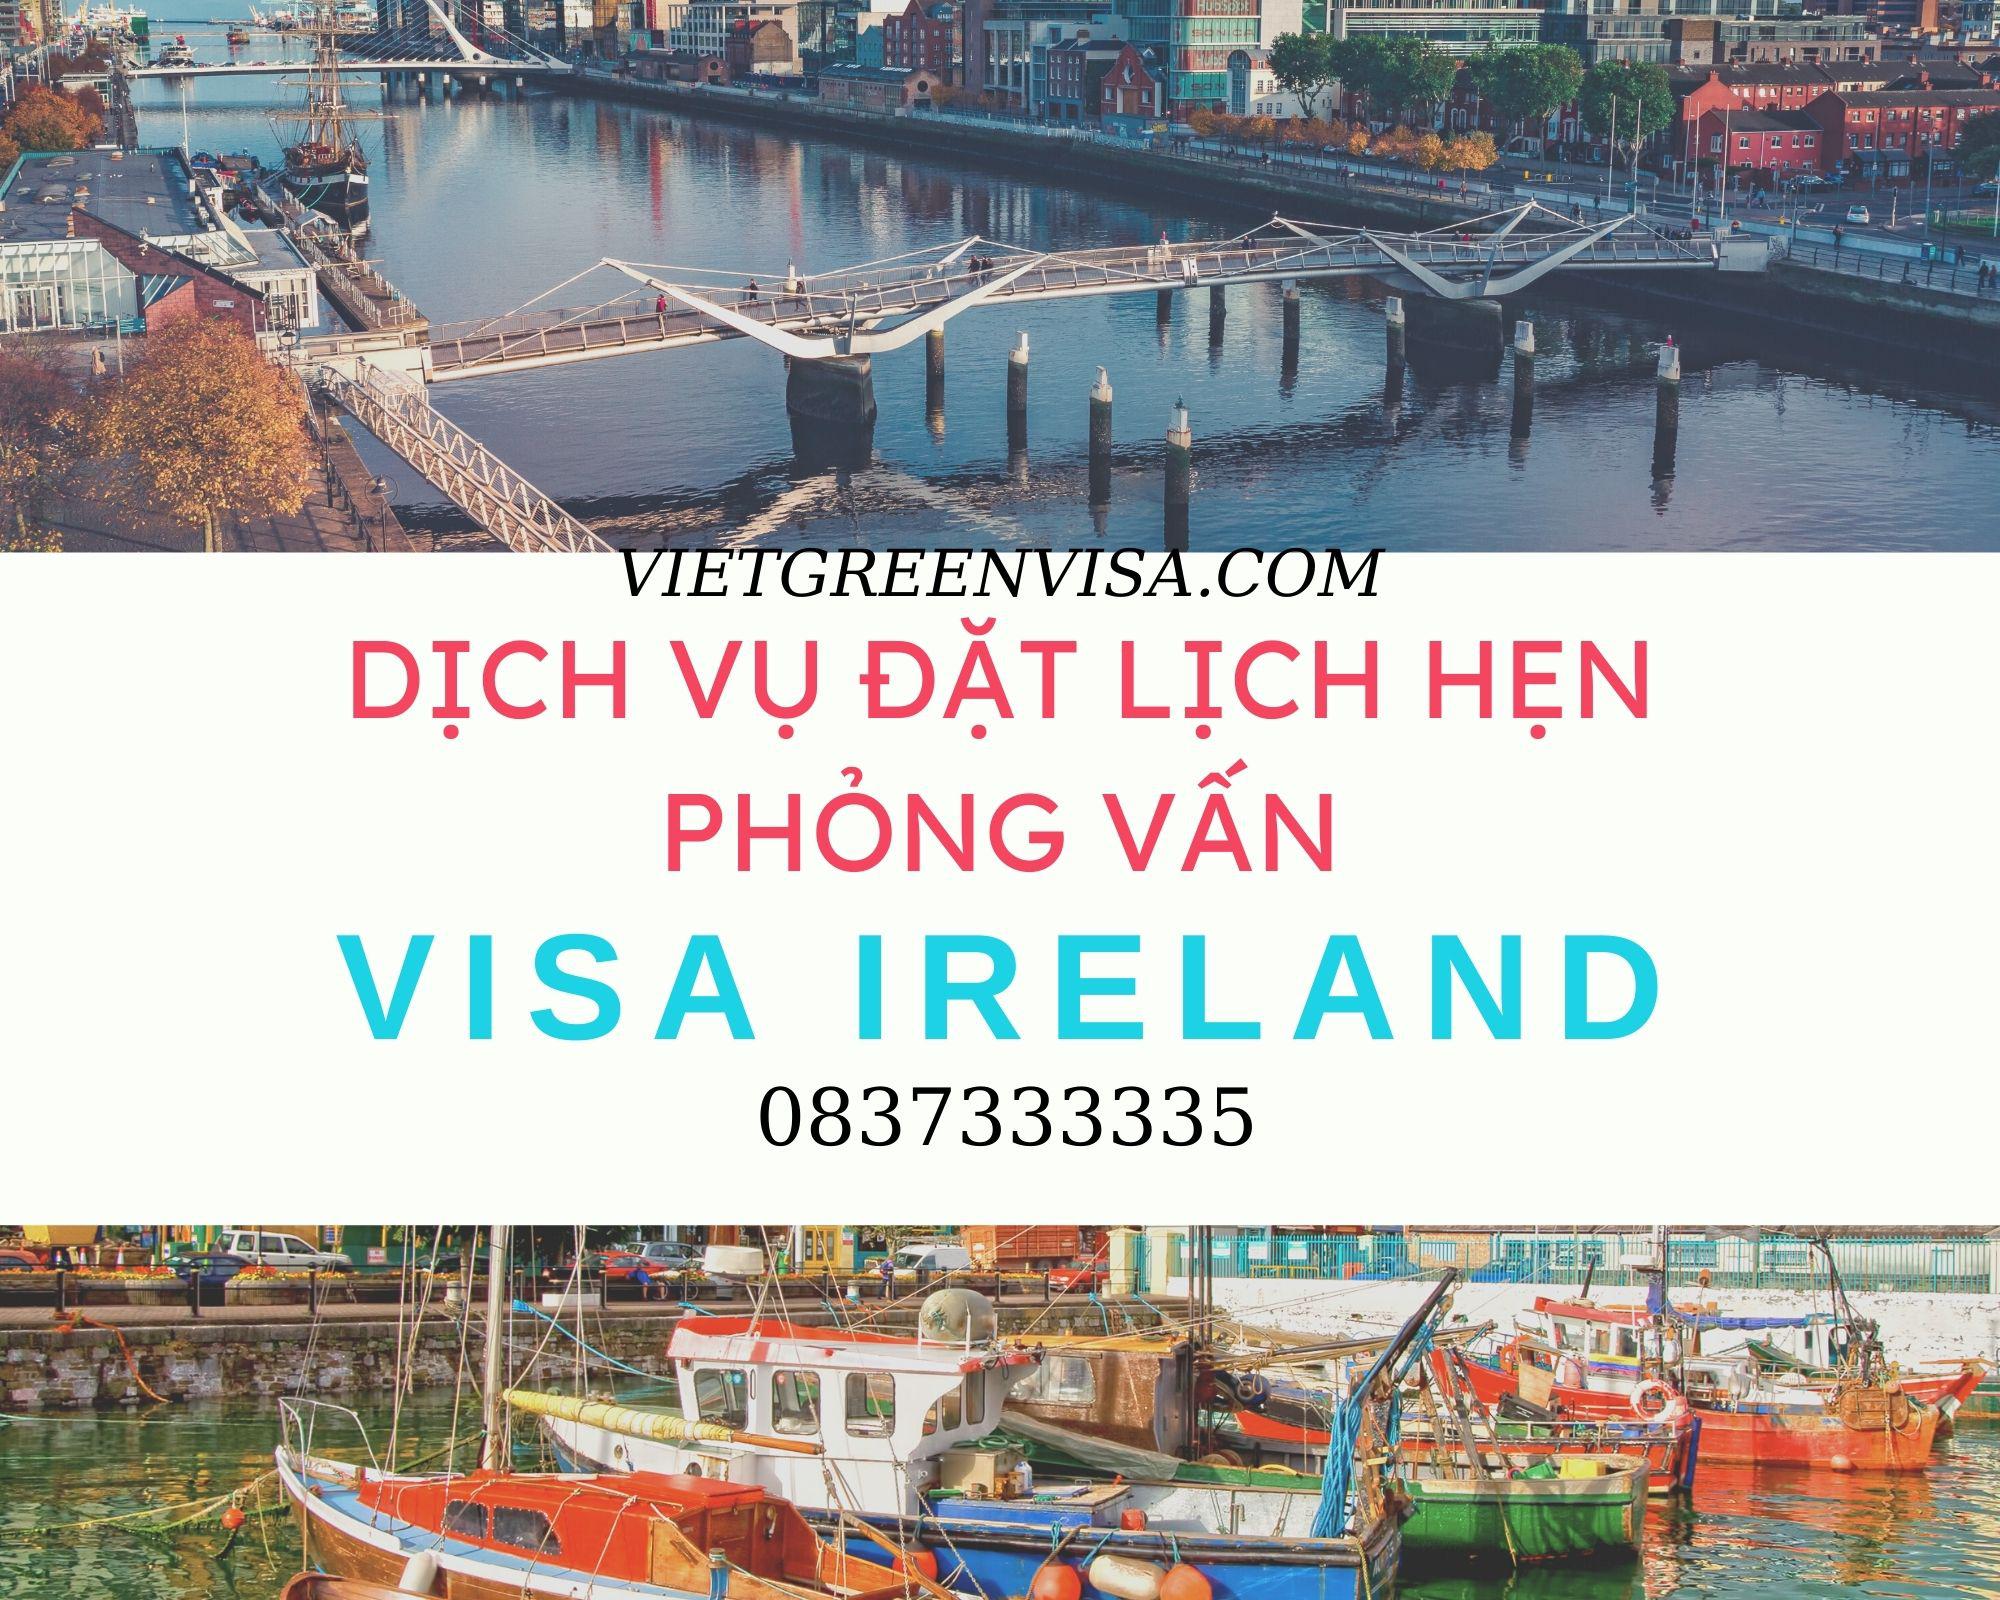 Đặt lịch hẹn phỏng vấn xin visa Ireland nhanh rẻ